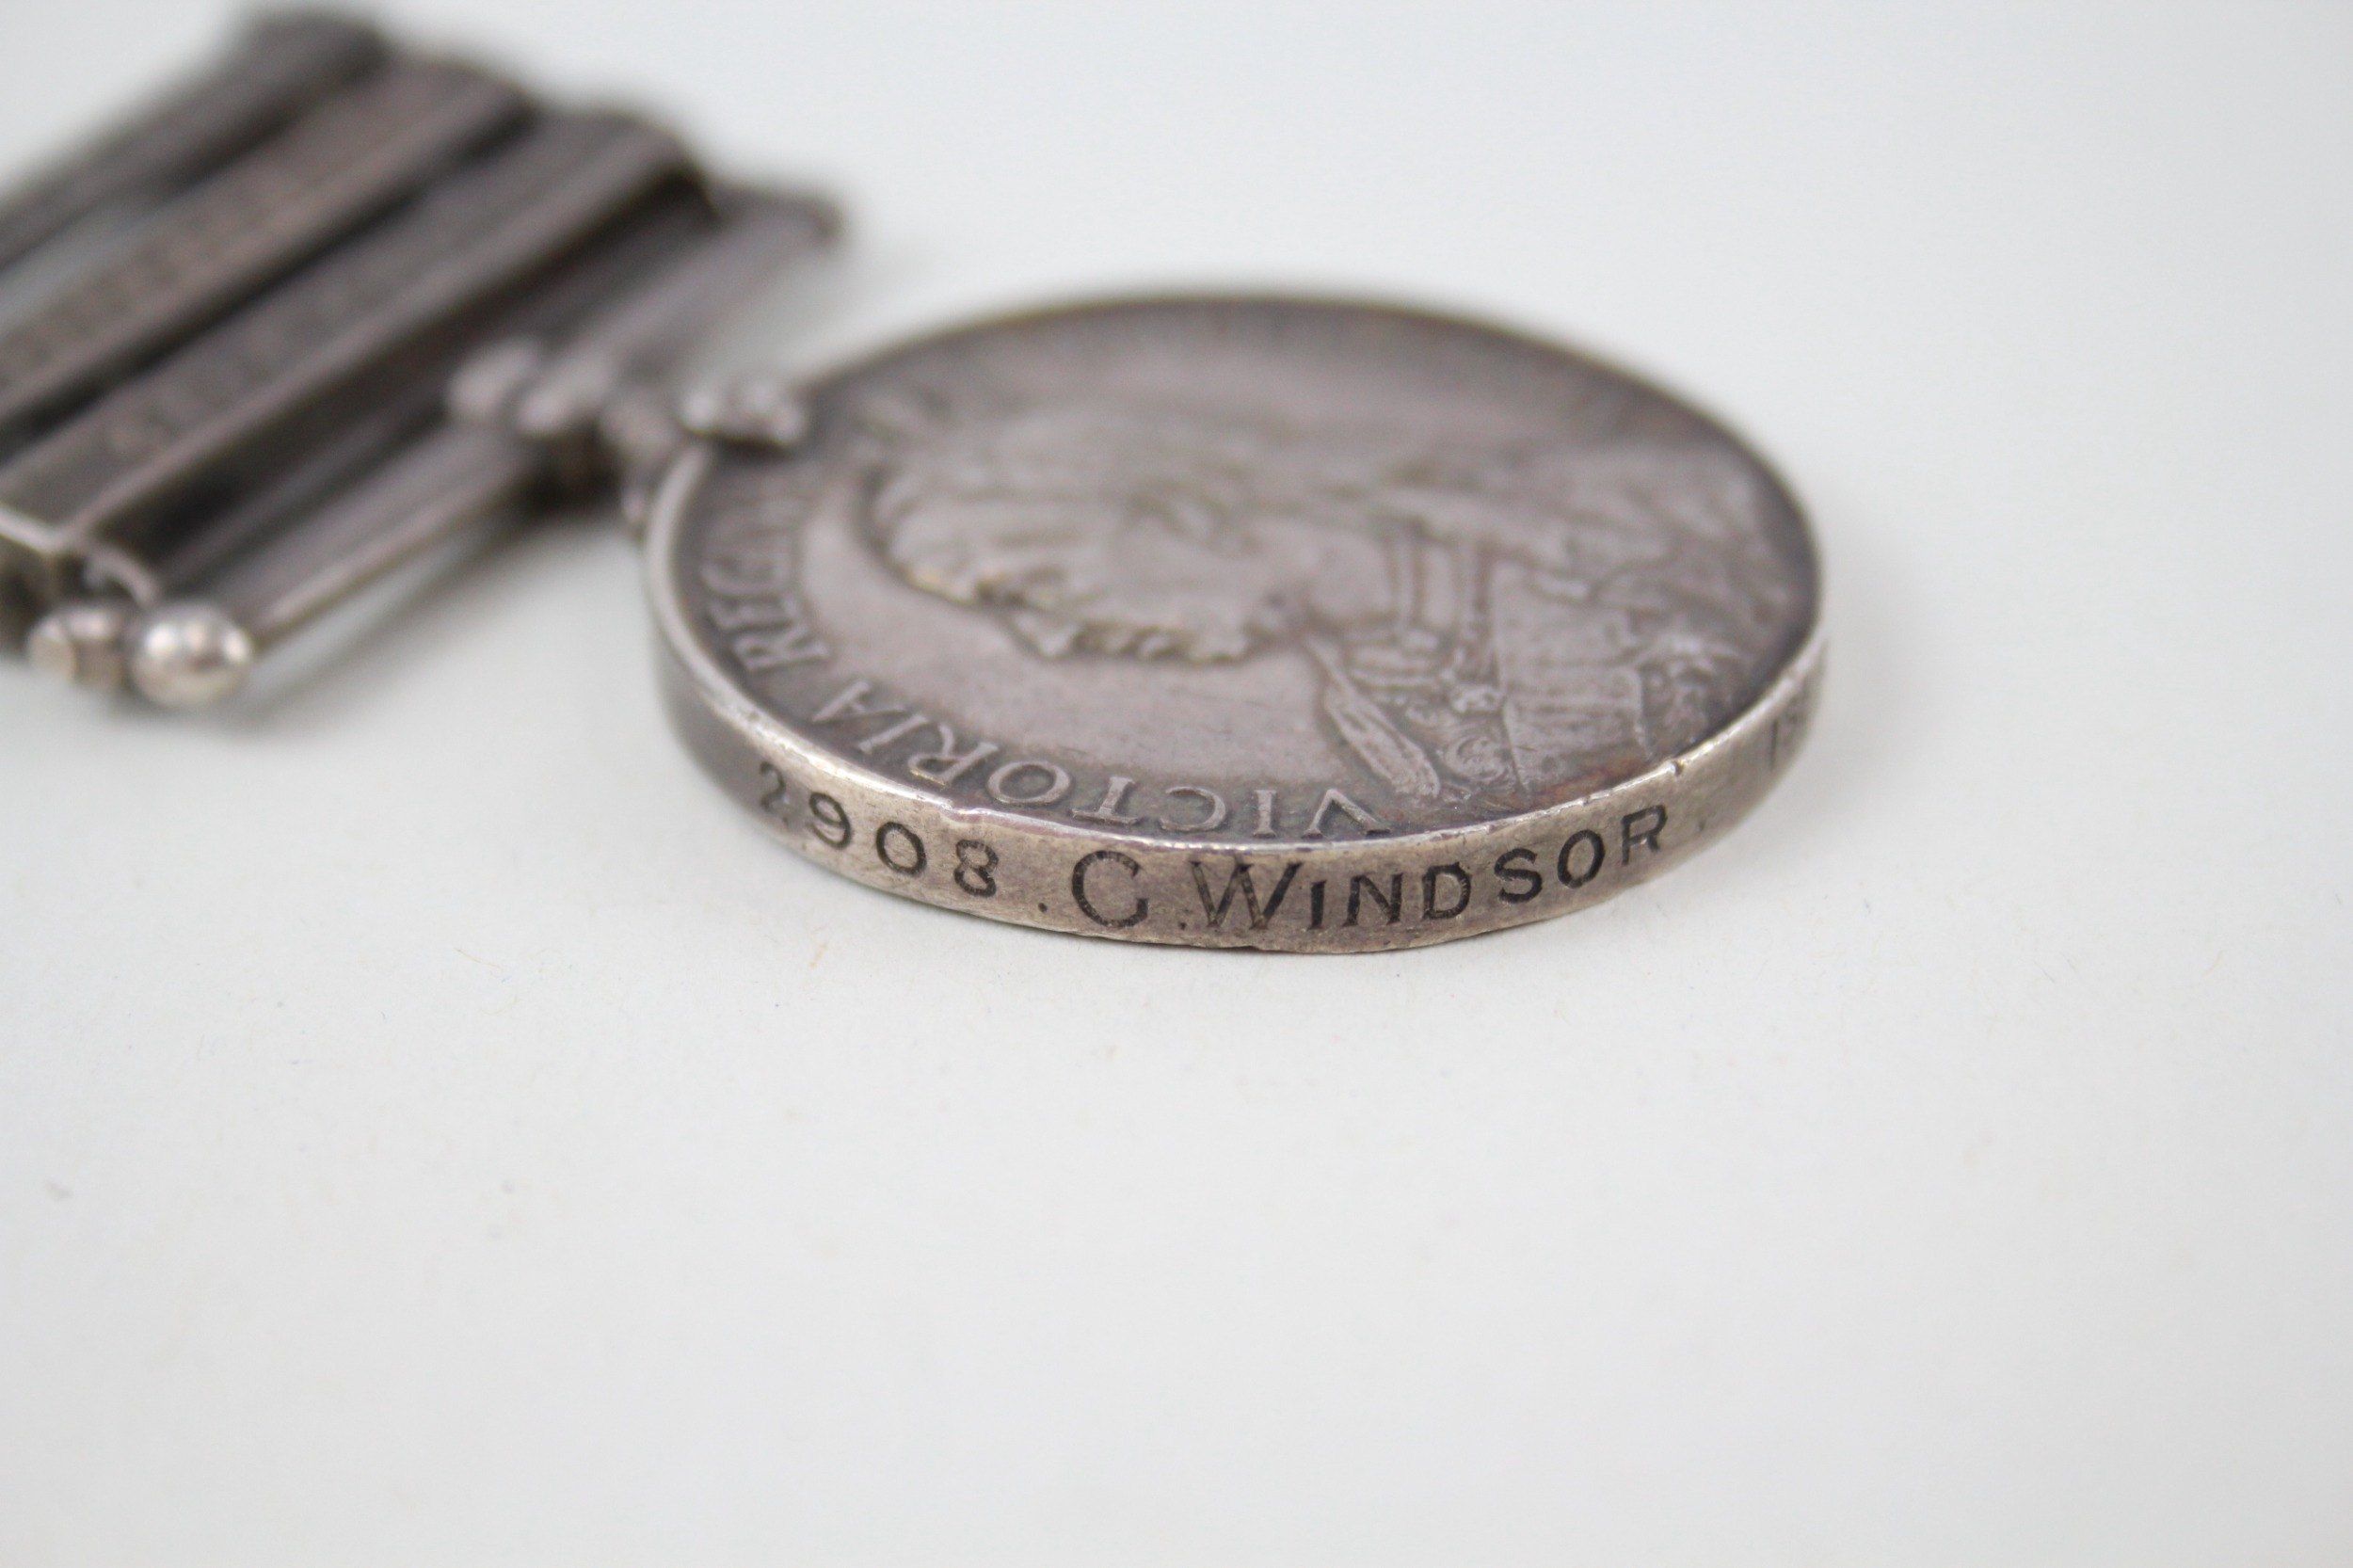 Boer War Queens South Africa Medal Named 2908 C. Windsor - Image 5 of 6